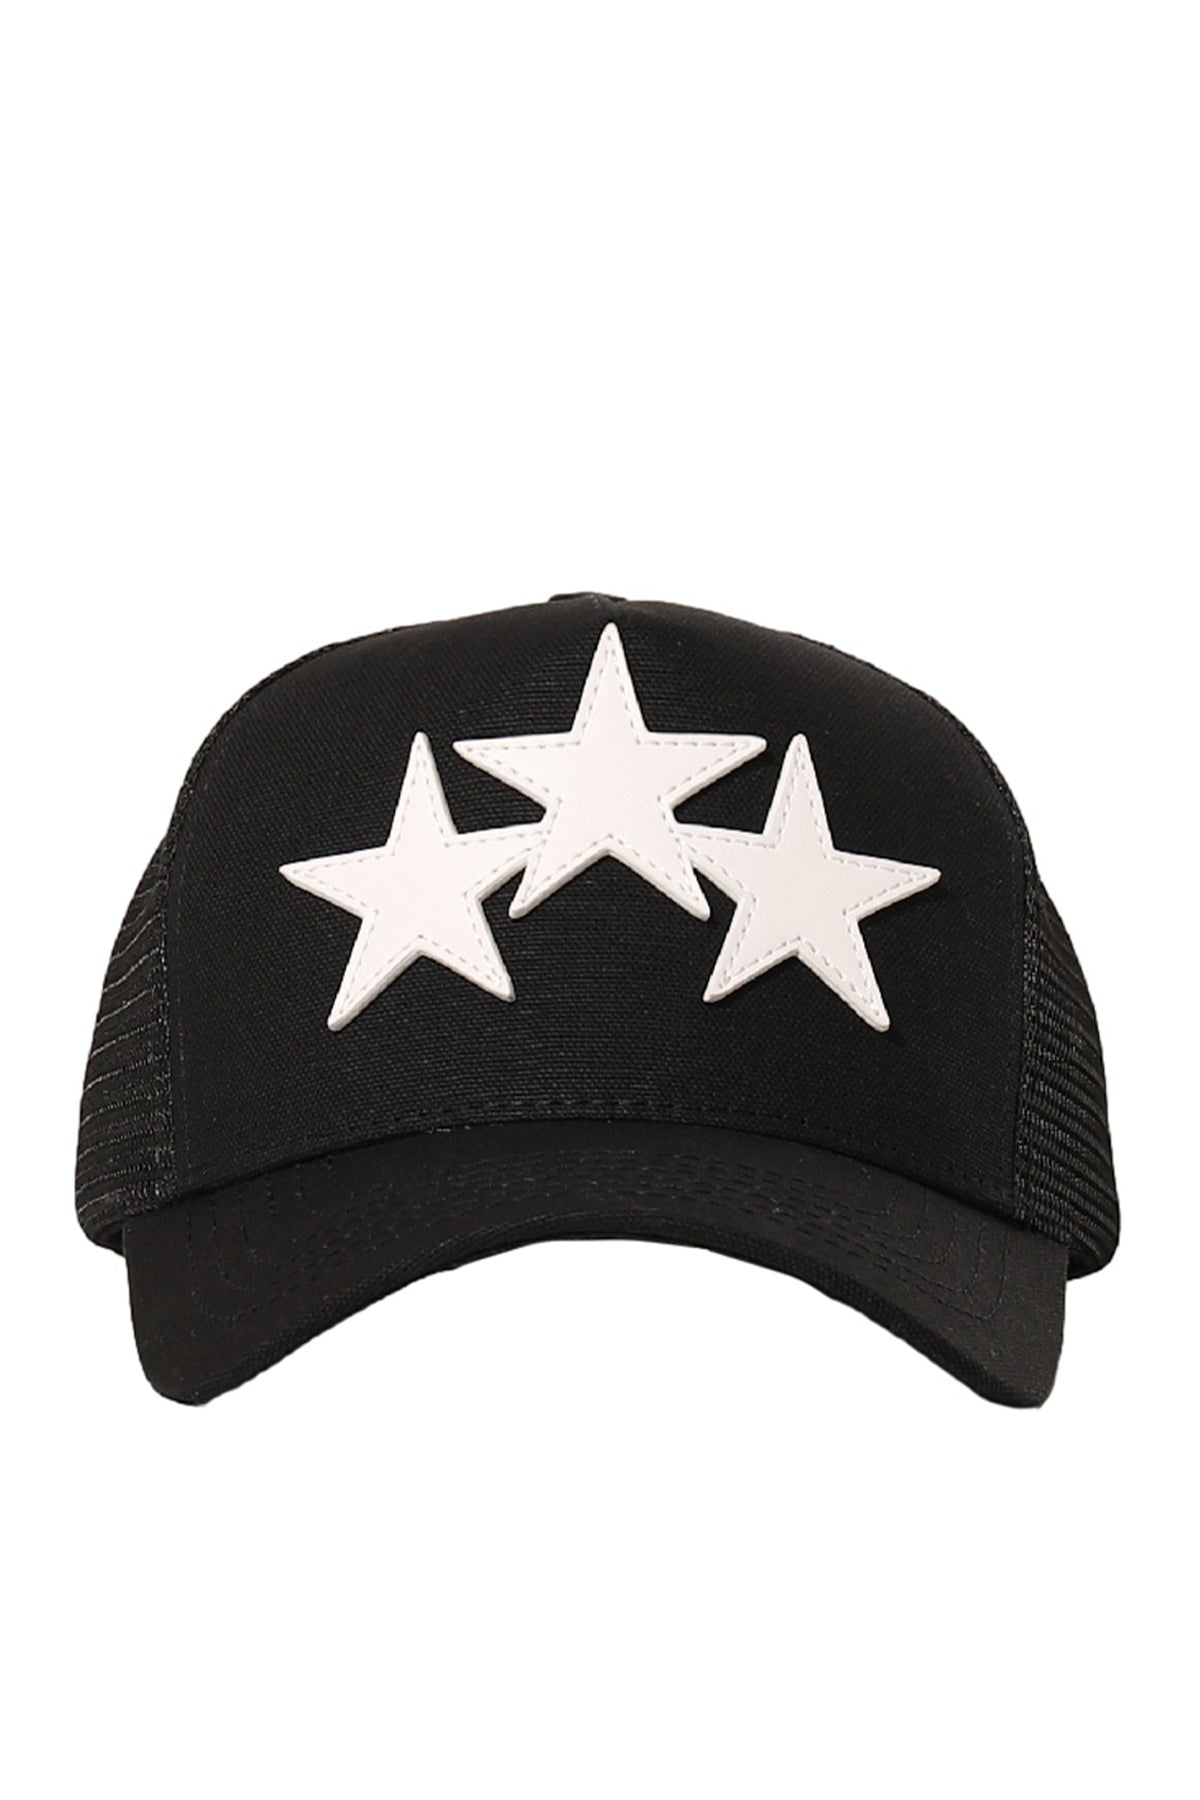 3 STAR TRUCKER HAT / BLK WHT